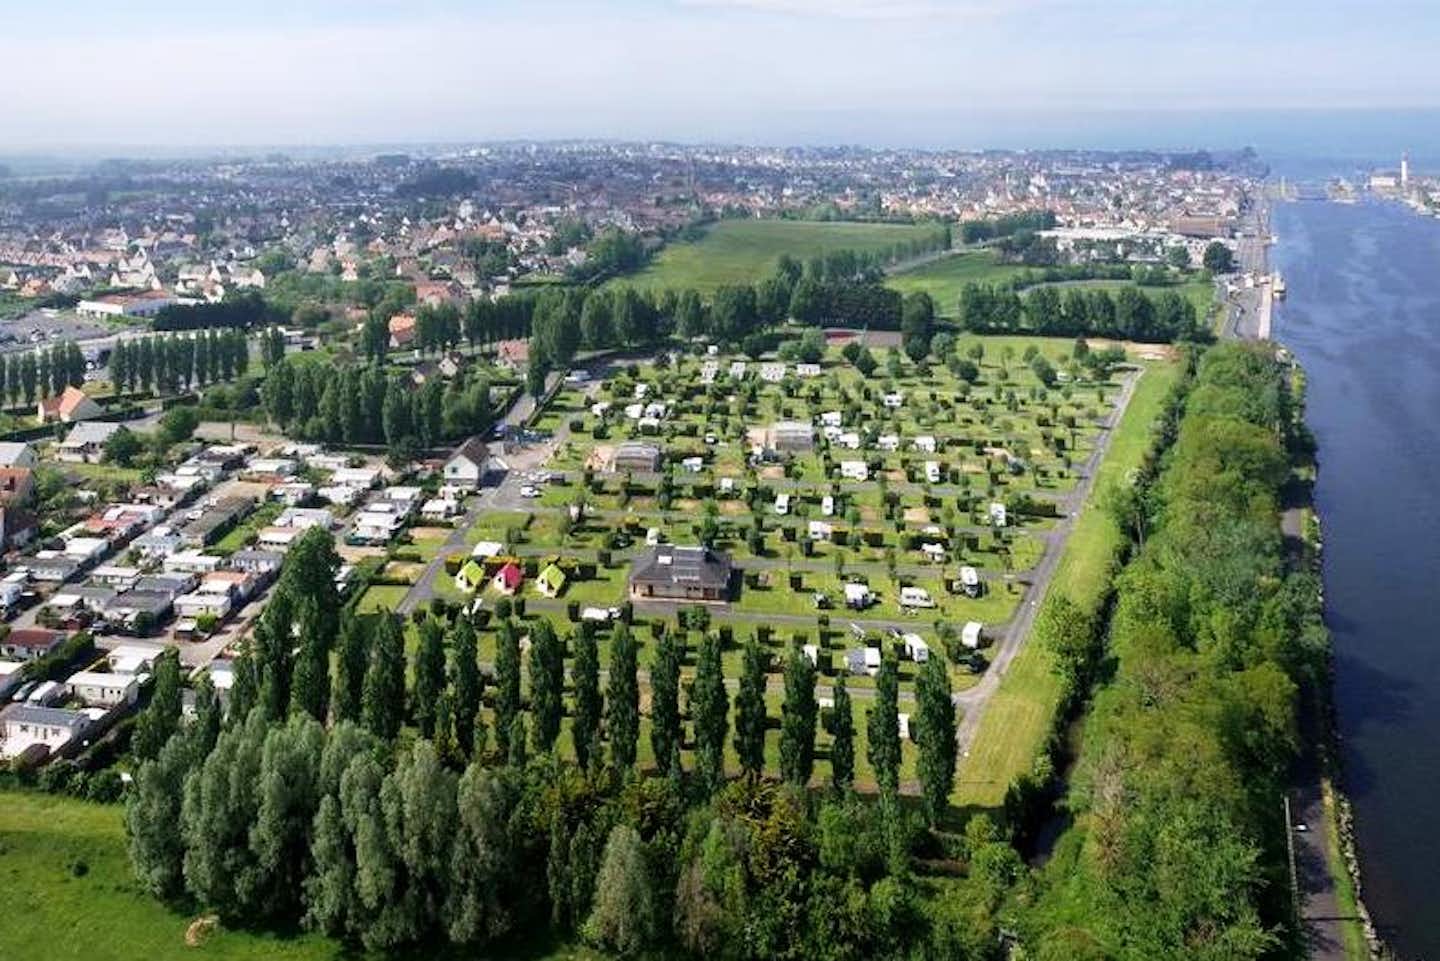 Camping Le Riva Bella Seasanova - Blick auf Gelände vom Campingplatz aus der Vogelperspektive